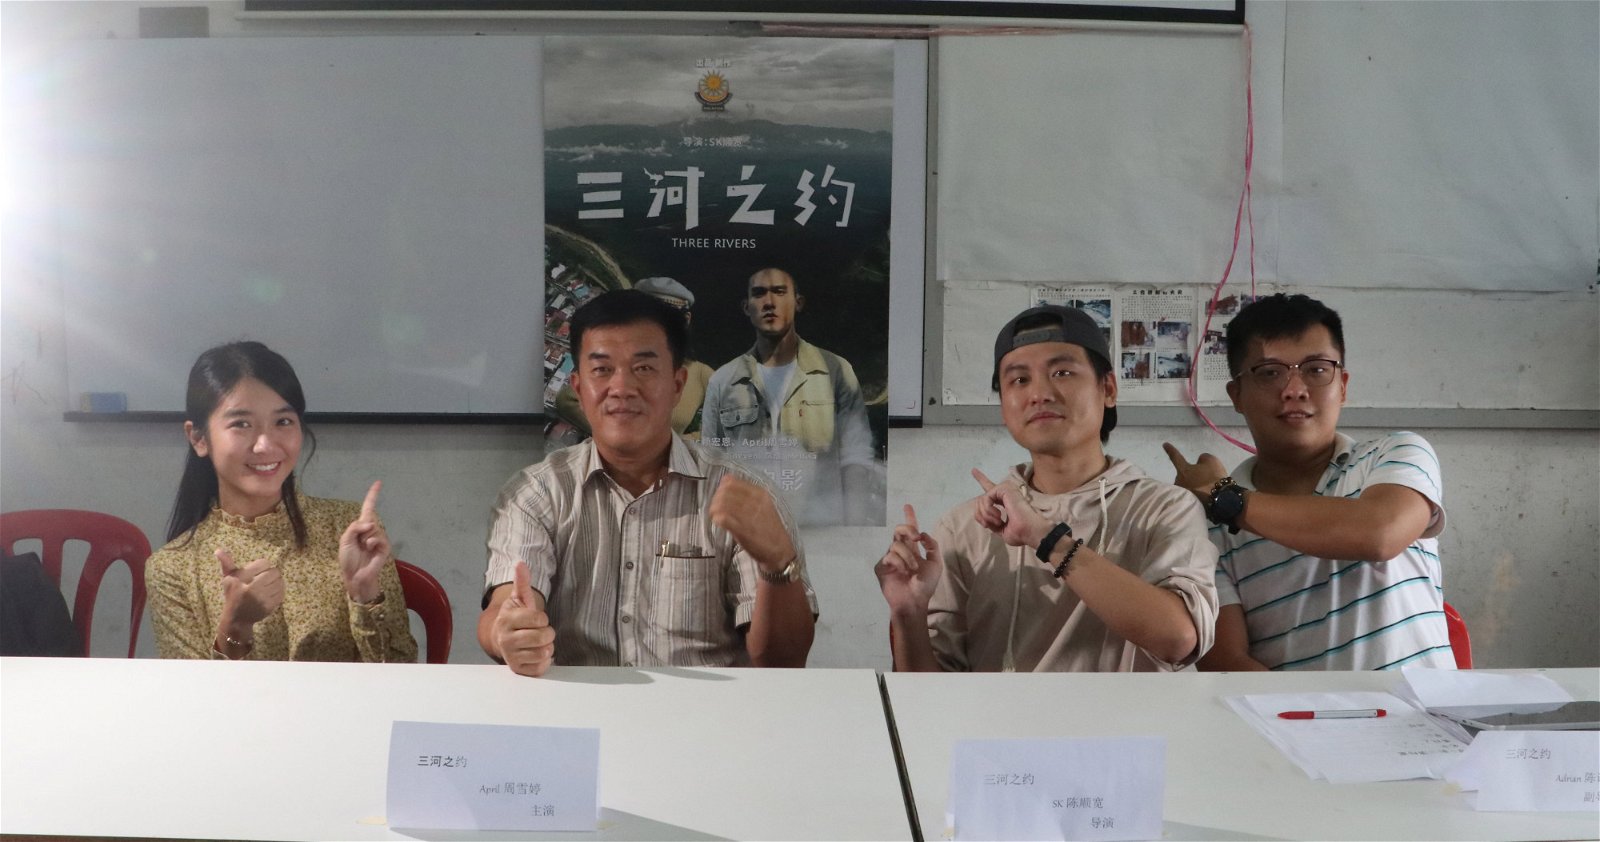 周雪婷（左起）、彼咯区州议员陈宗、导演 SK 顺宽和副导演陈讯节参与了演员招募试镜会活动。